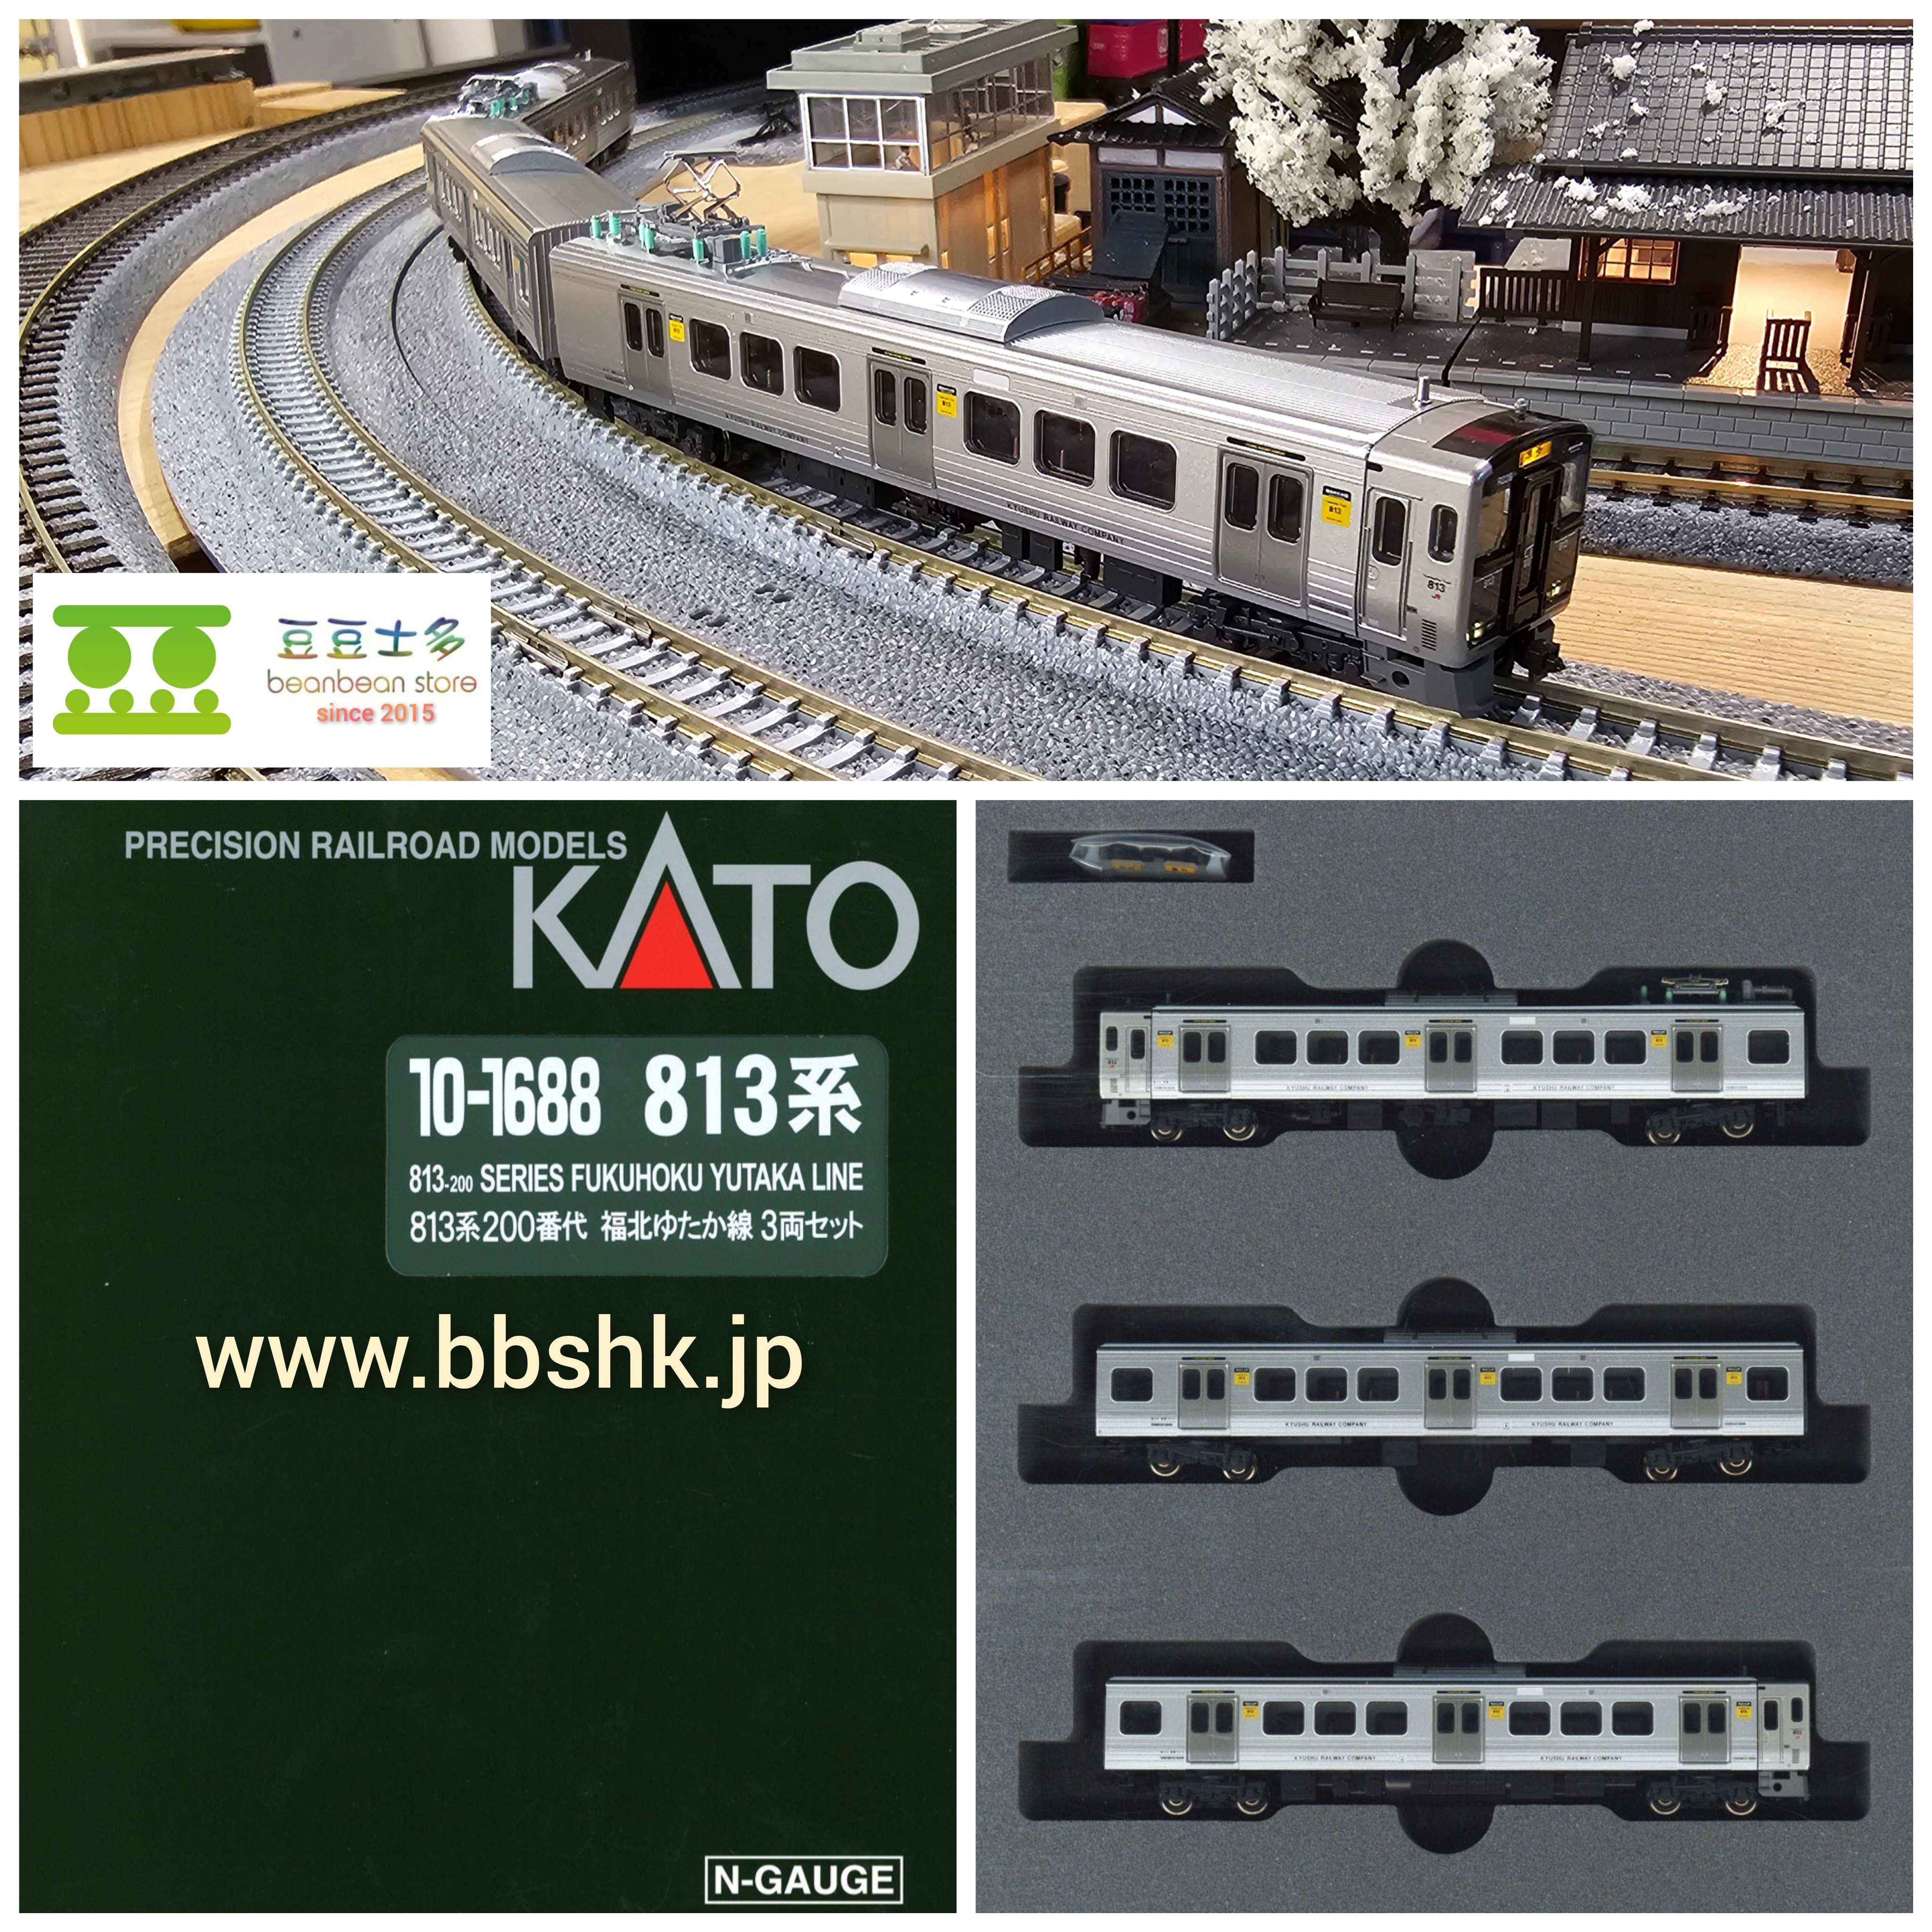 KATO 10-1688 813系200番代 福北ゆたか線 (3両)